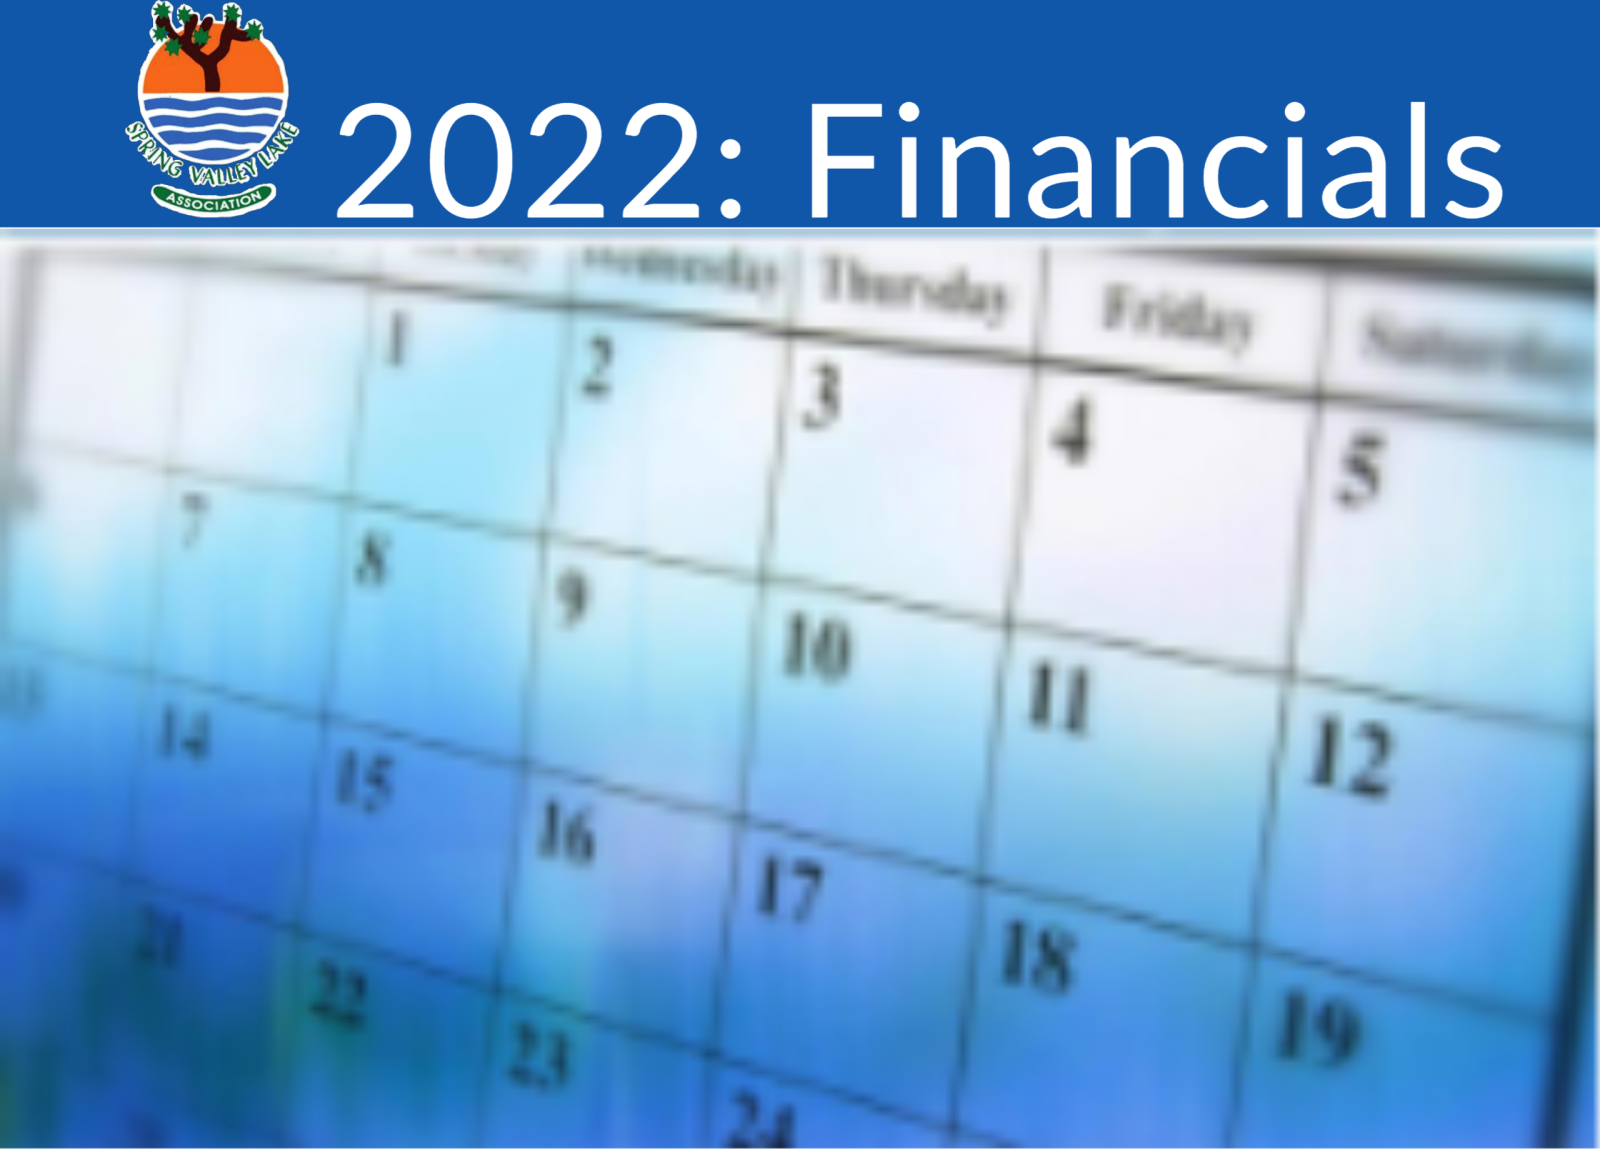 2022: Financials